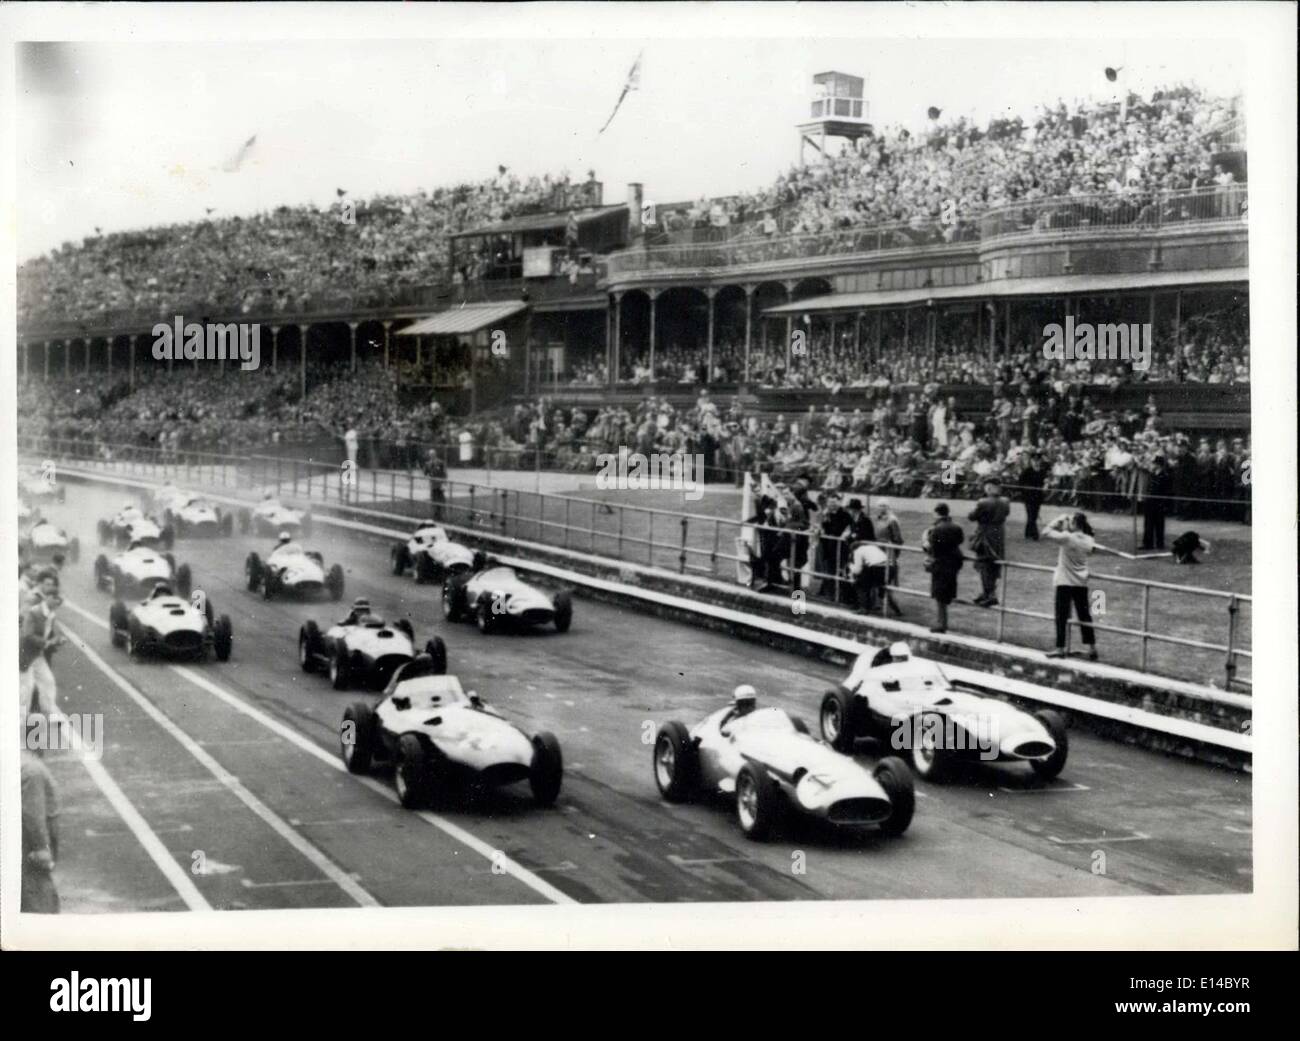 Abril 17, 2012 - Grand Prix Británico y Europeo en Aintree. La foto muestra la escena como los coches salir para el inicio de la carrera de hoy. Foto de stock